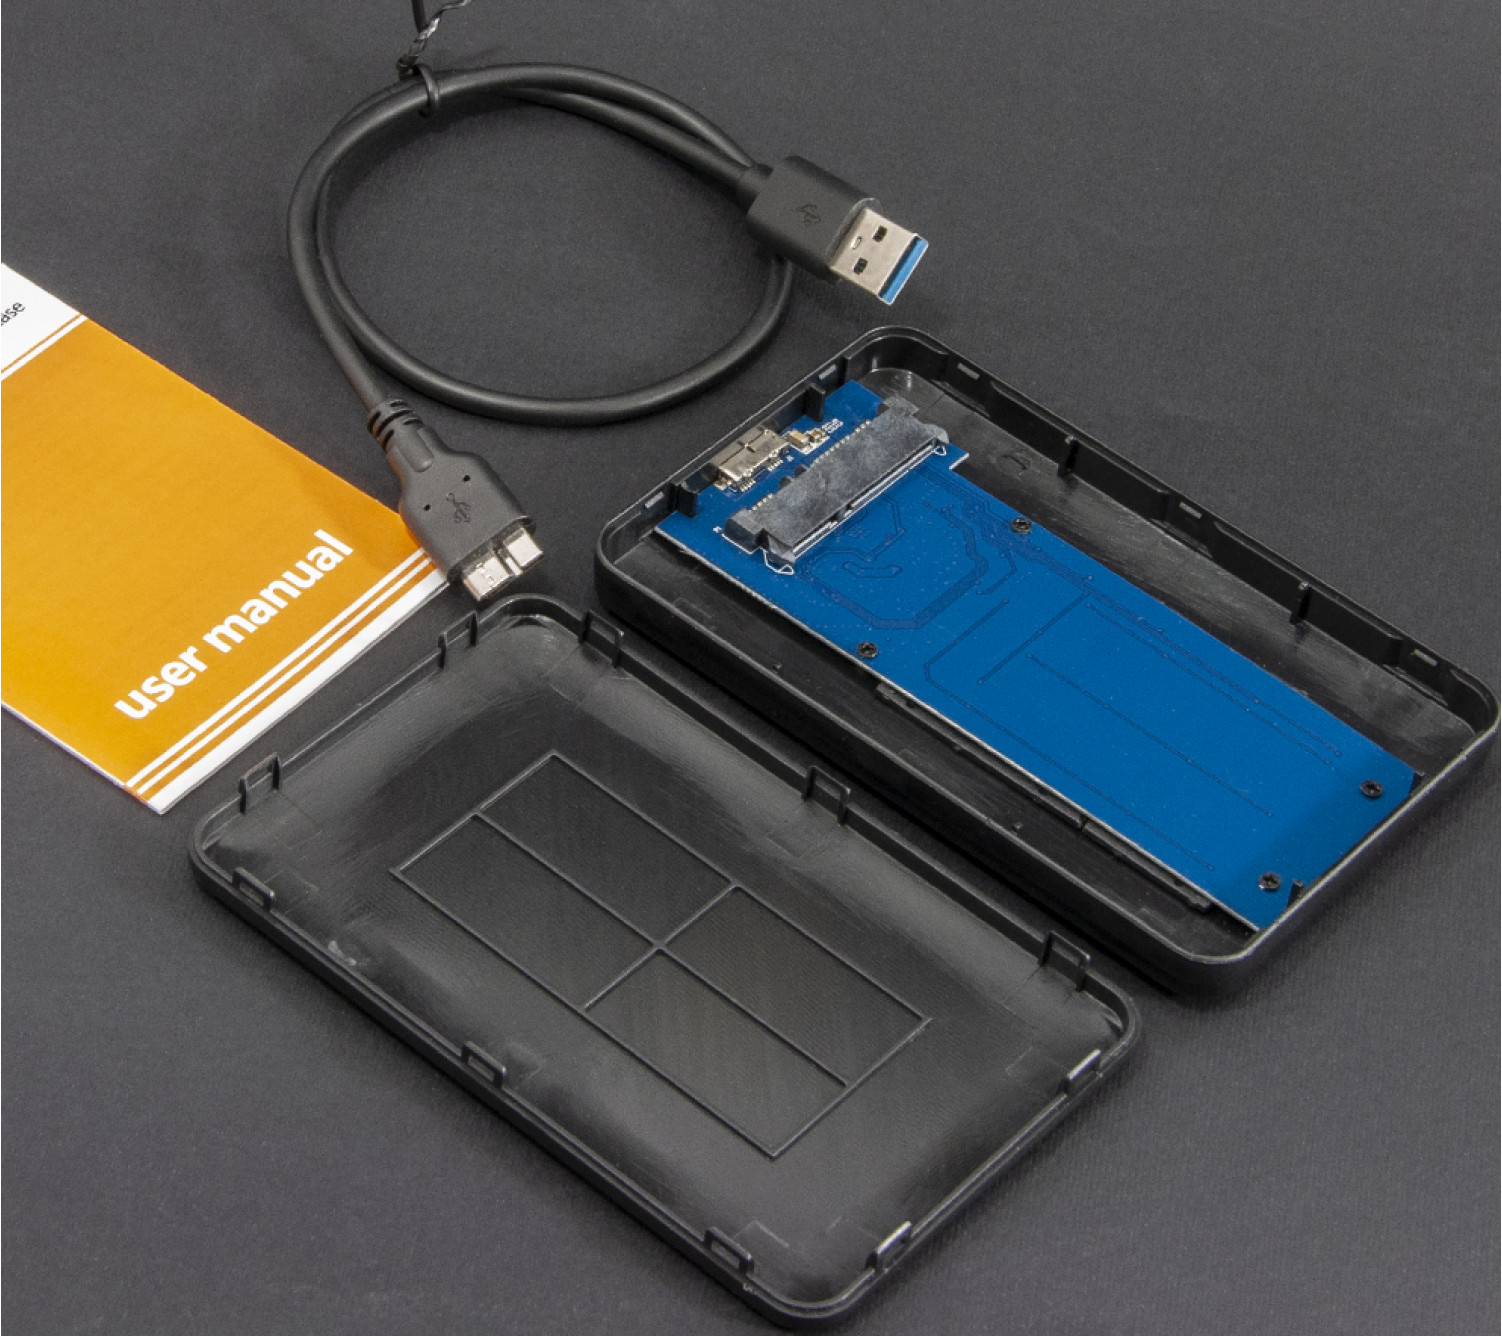 Внешний карман Frime для 2.5" SATA HDD/SSD AES256 bit encryption USB 3.0 Black 